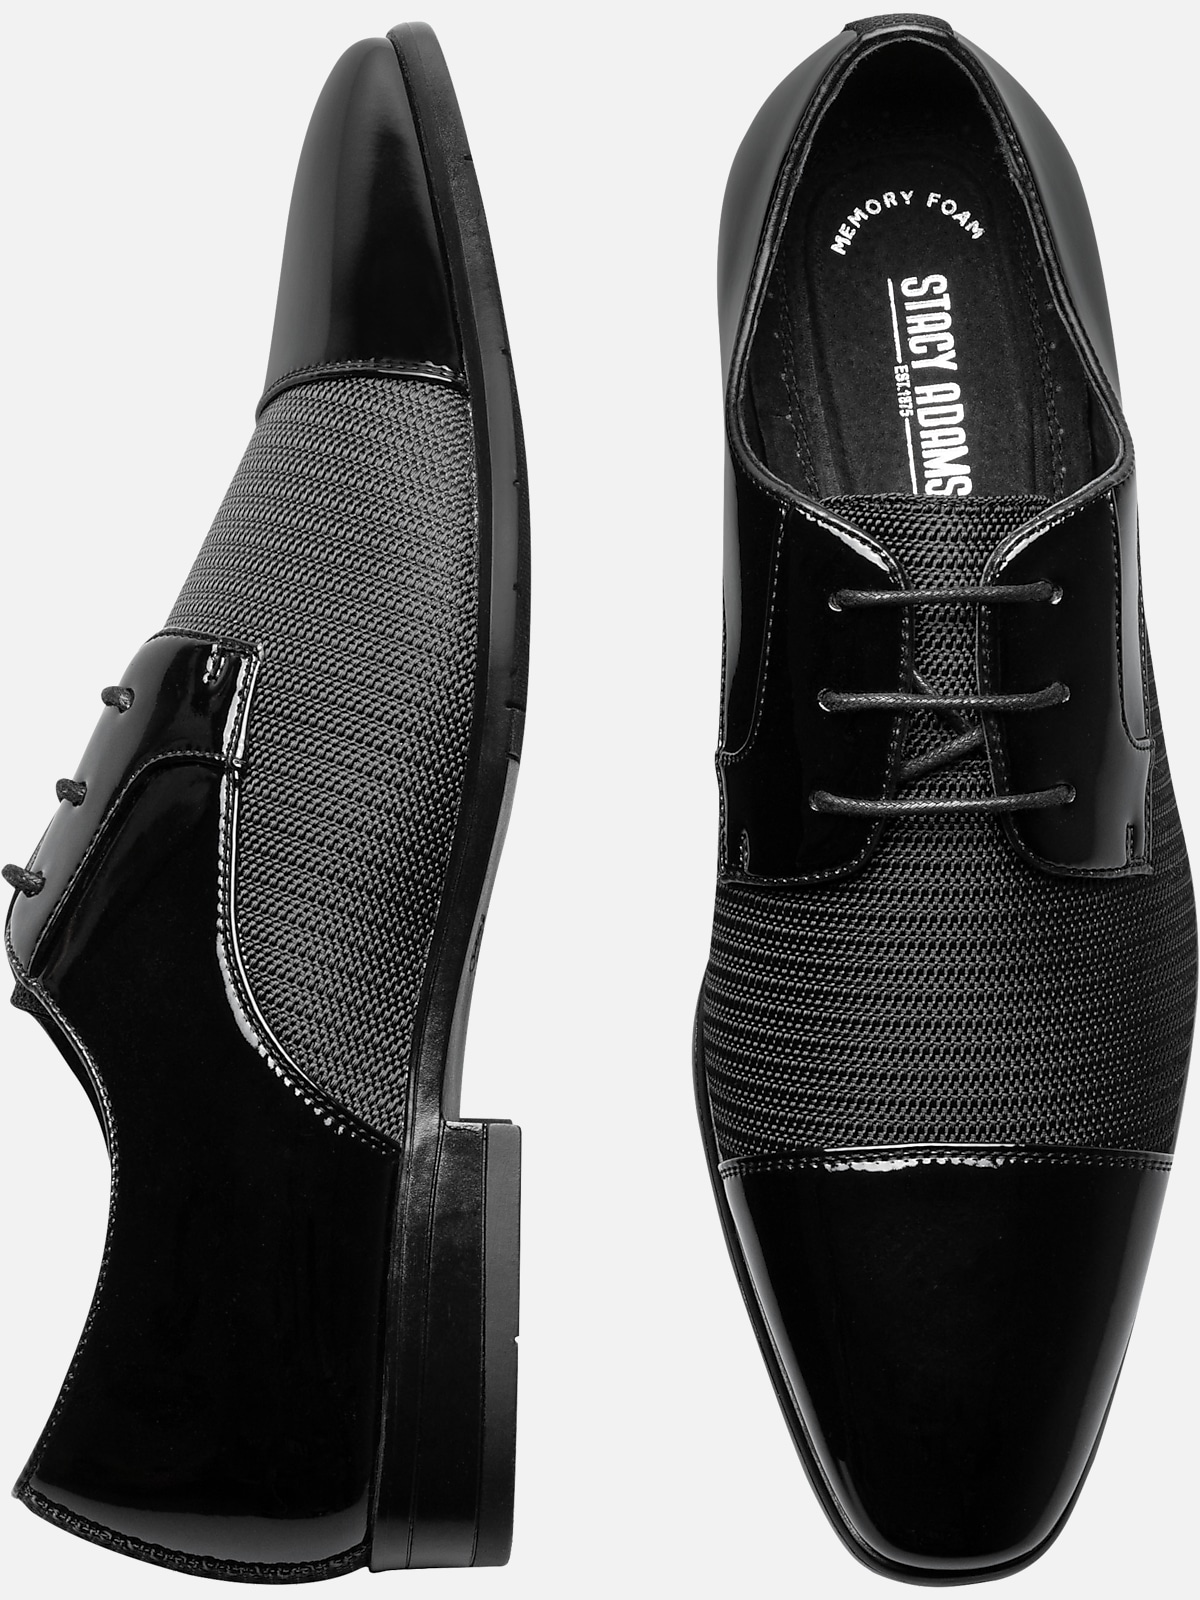 Men's Black Evening Oxford Shoes